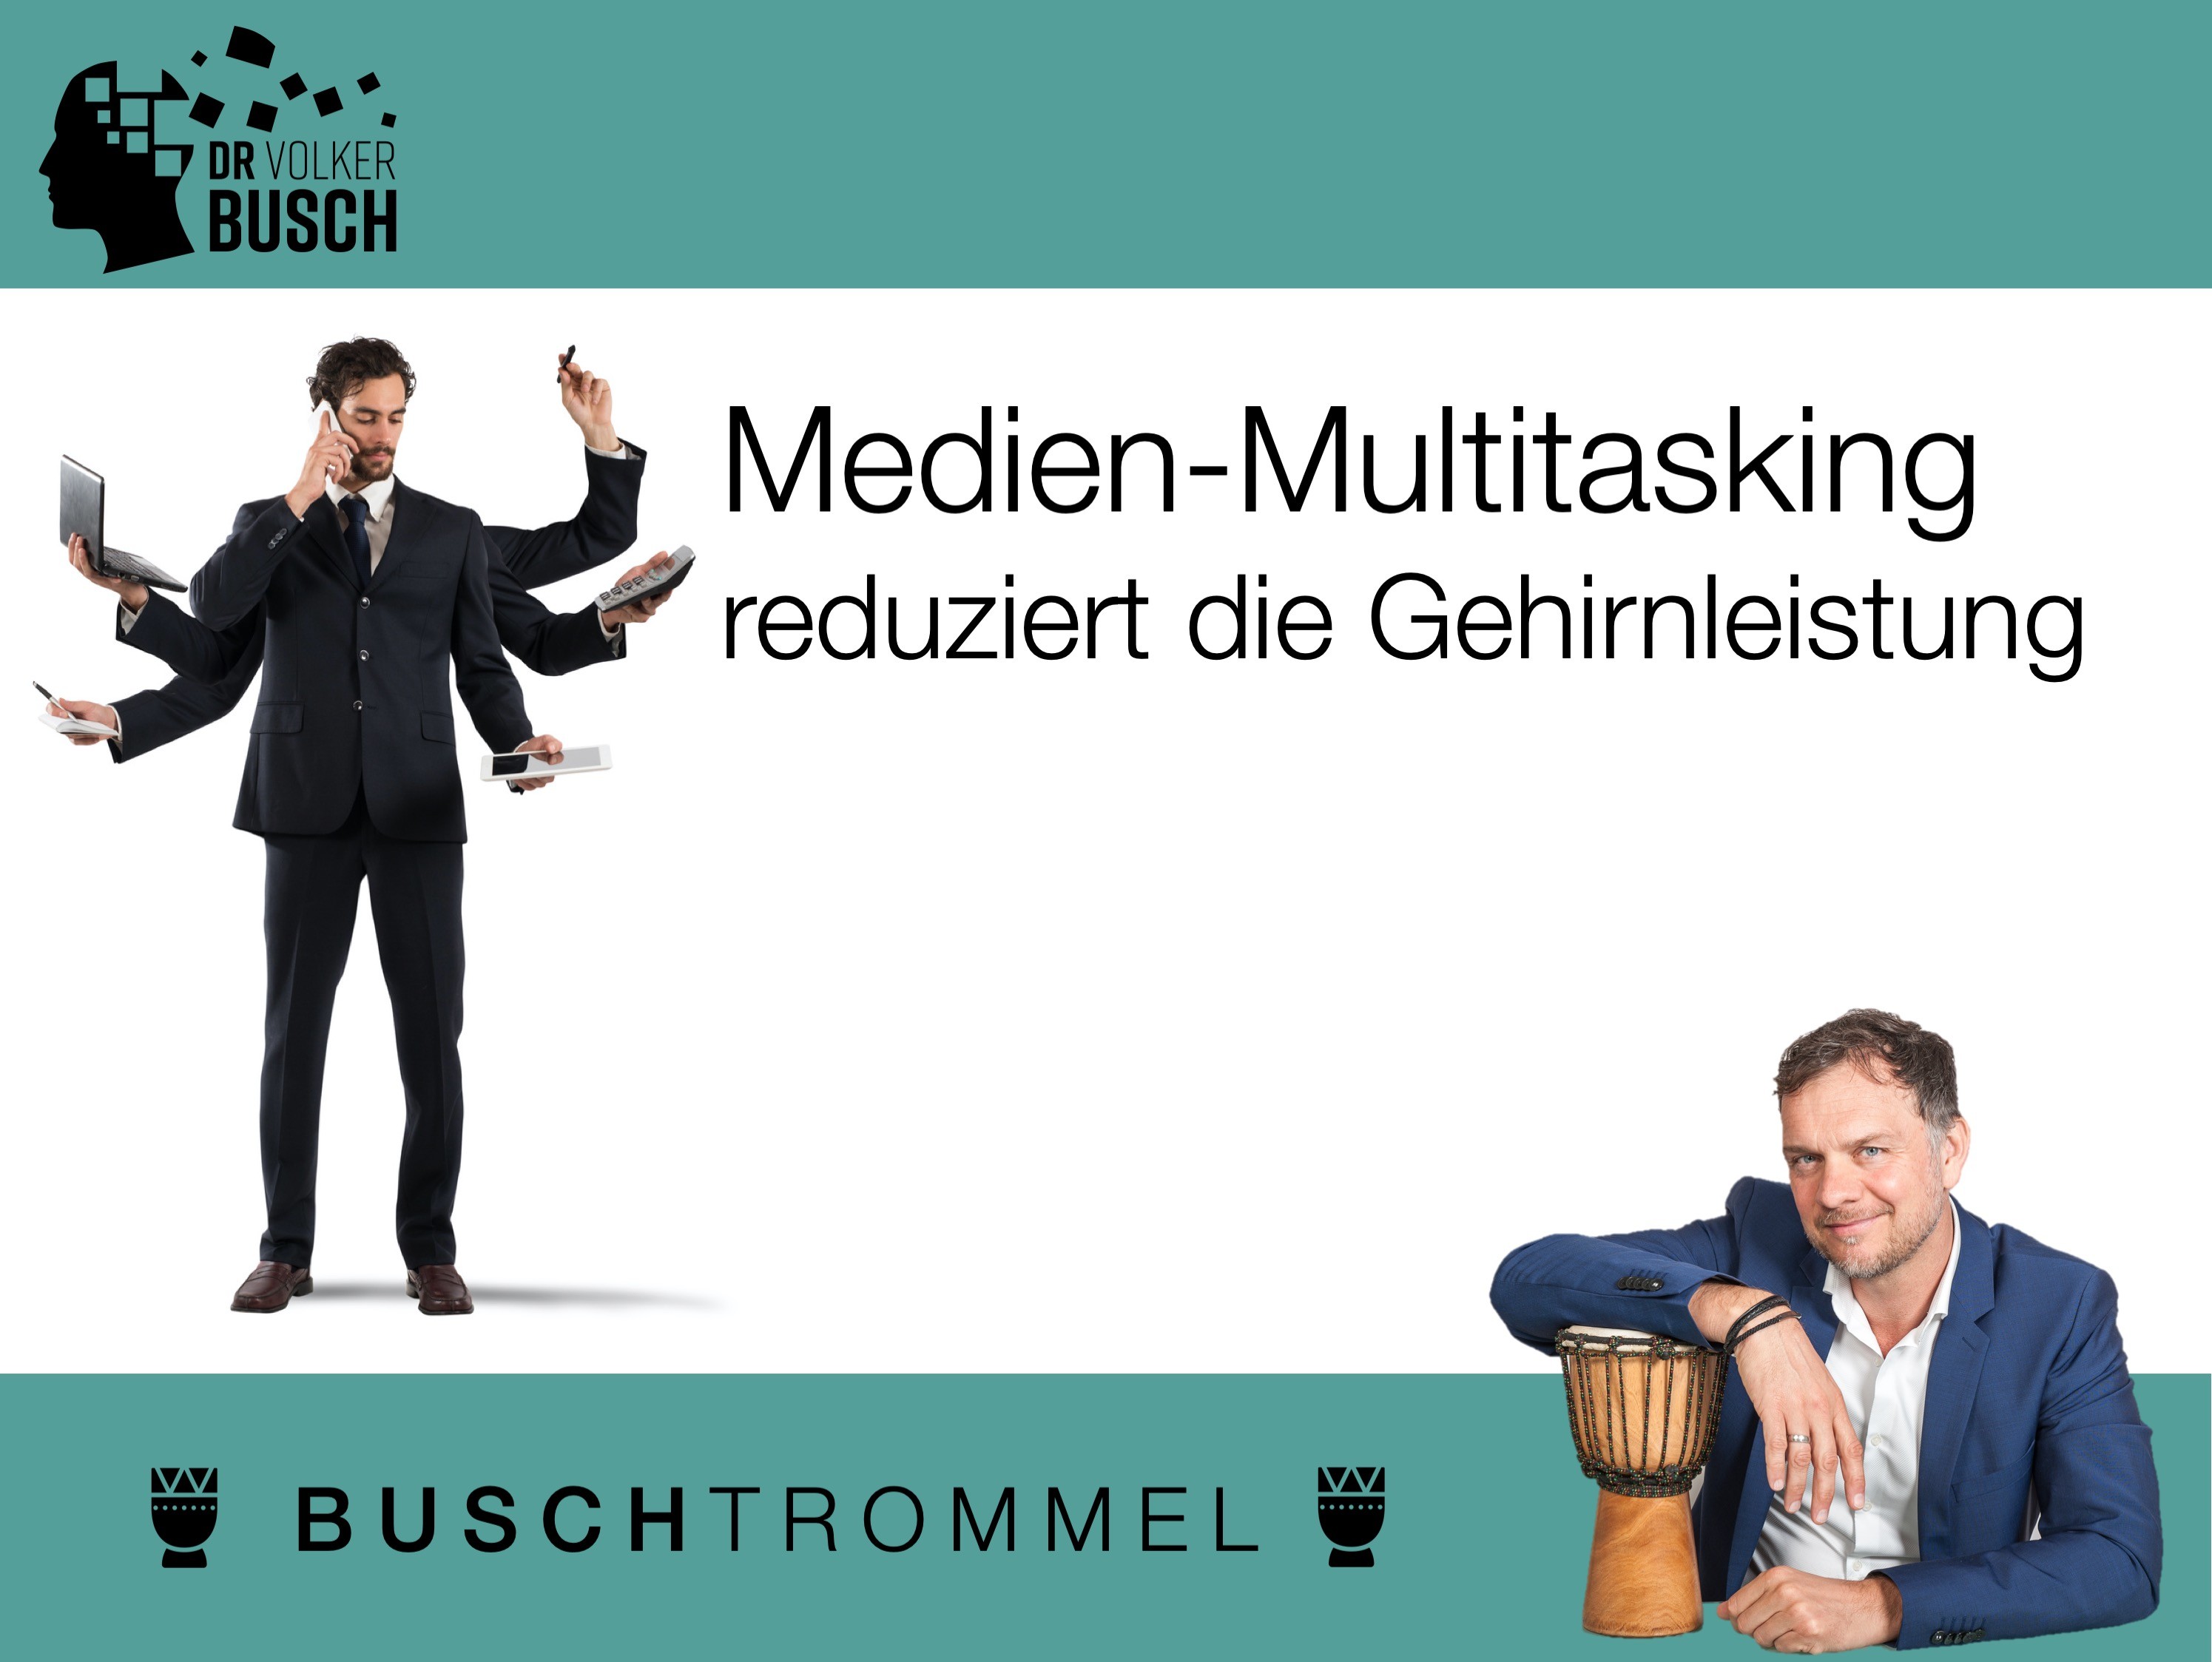 Buschtrommel: Multitasking reduziert die Gehirnleistung - Dr. Volker Busch